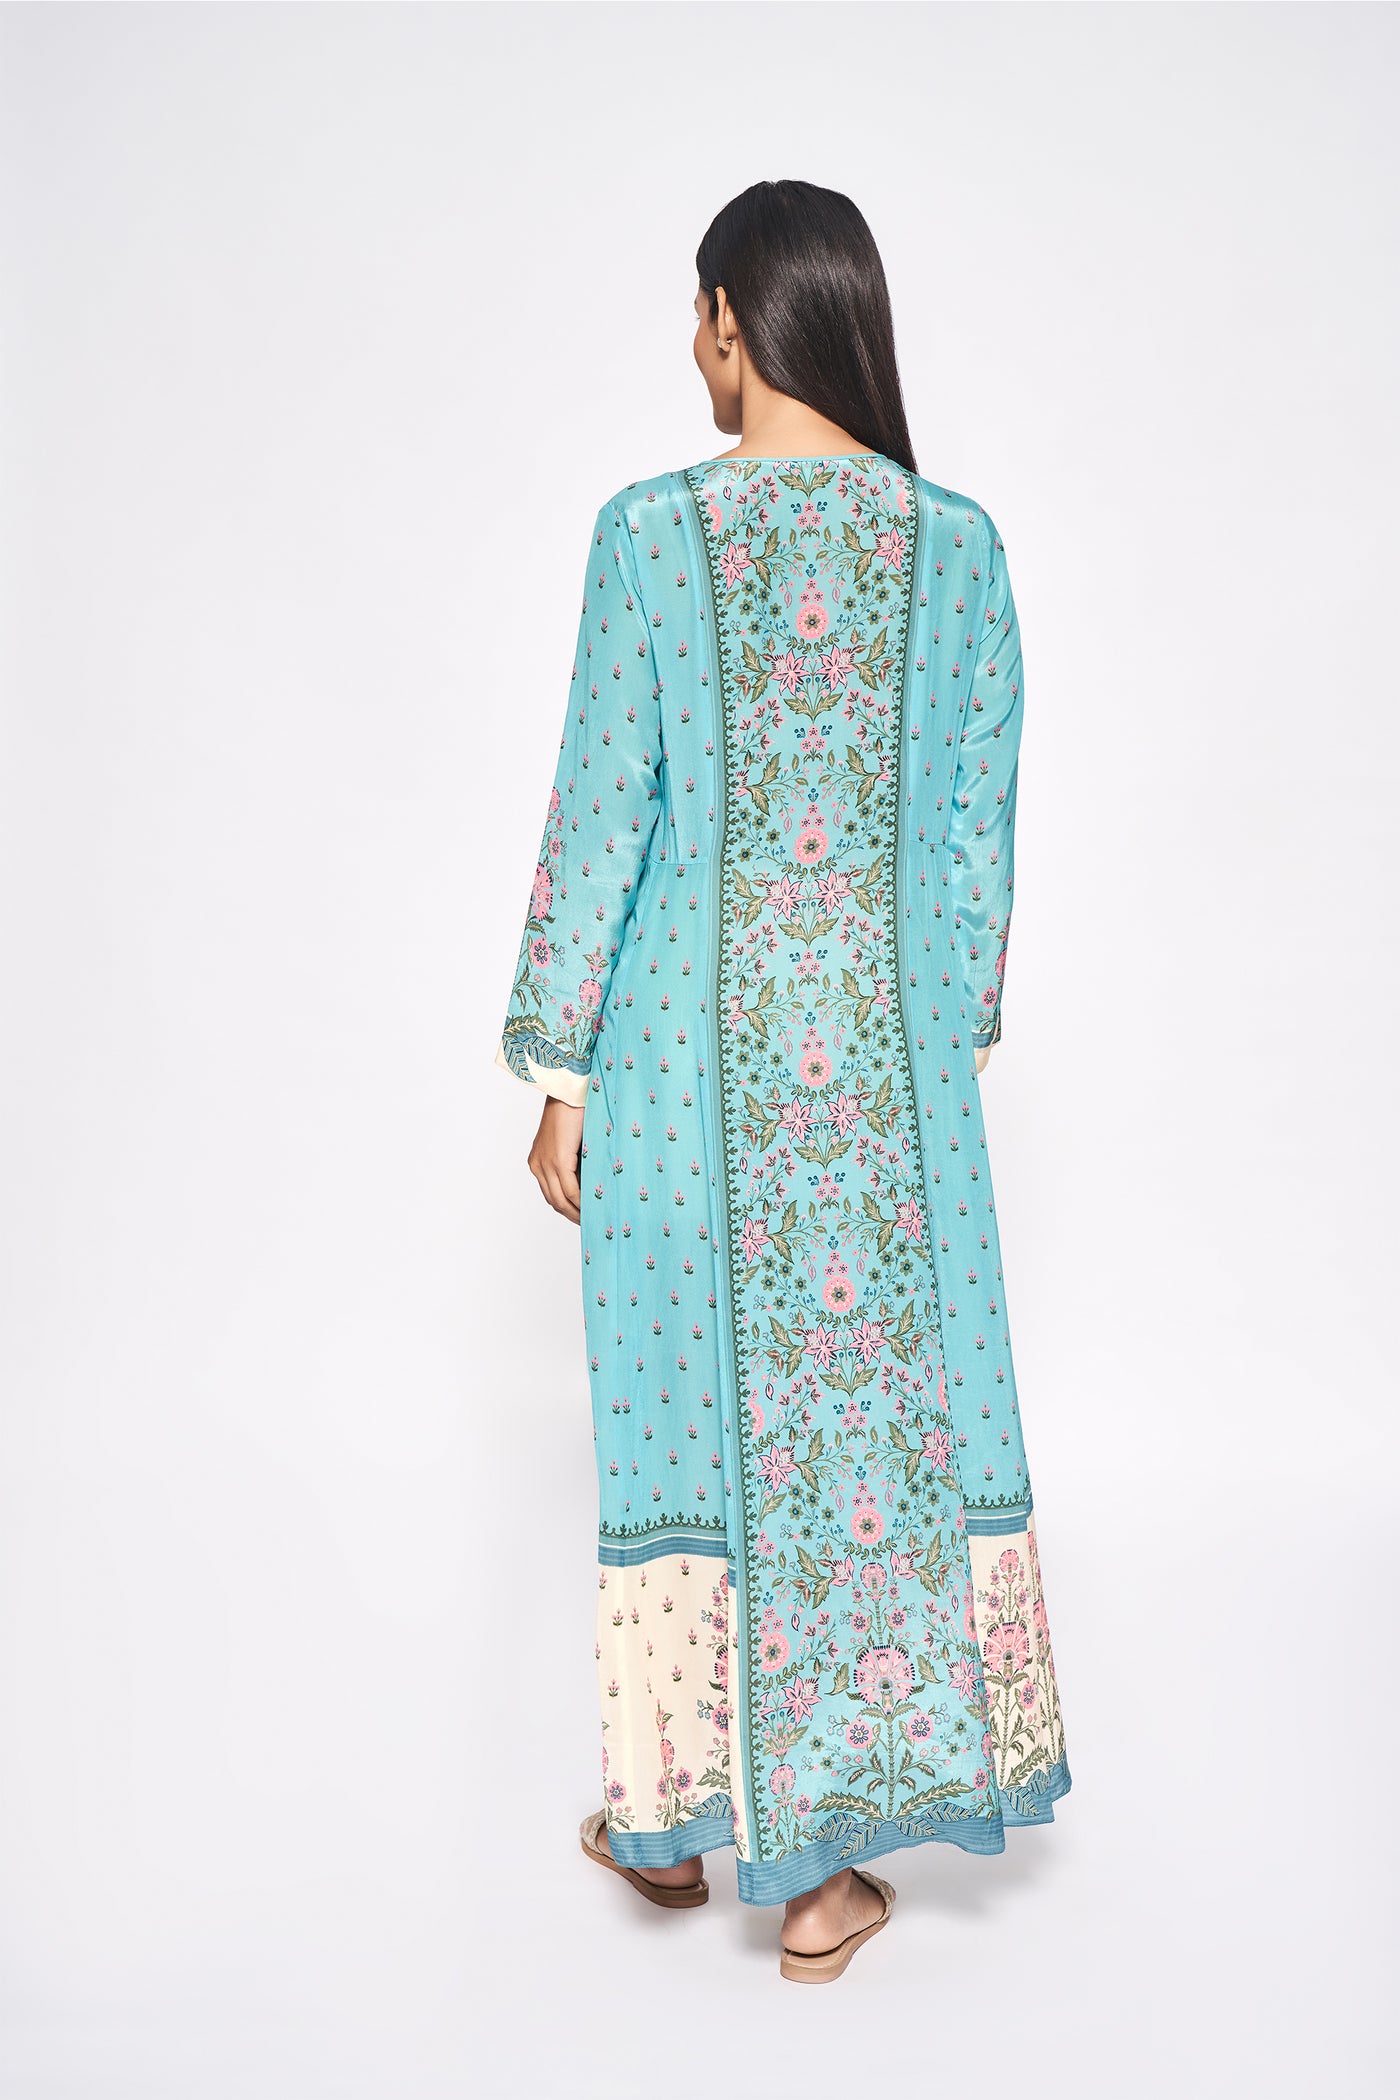 Anita Dongre Bansi Dress Blue western indian designer wear online shopping melange singapore